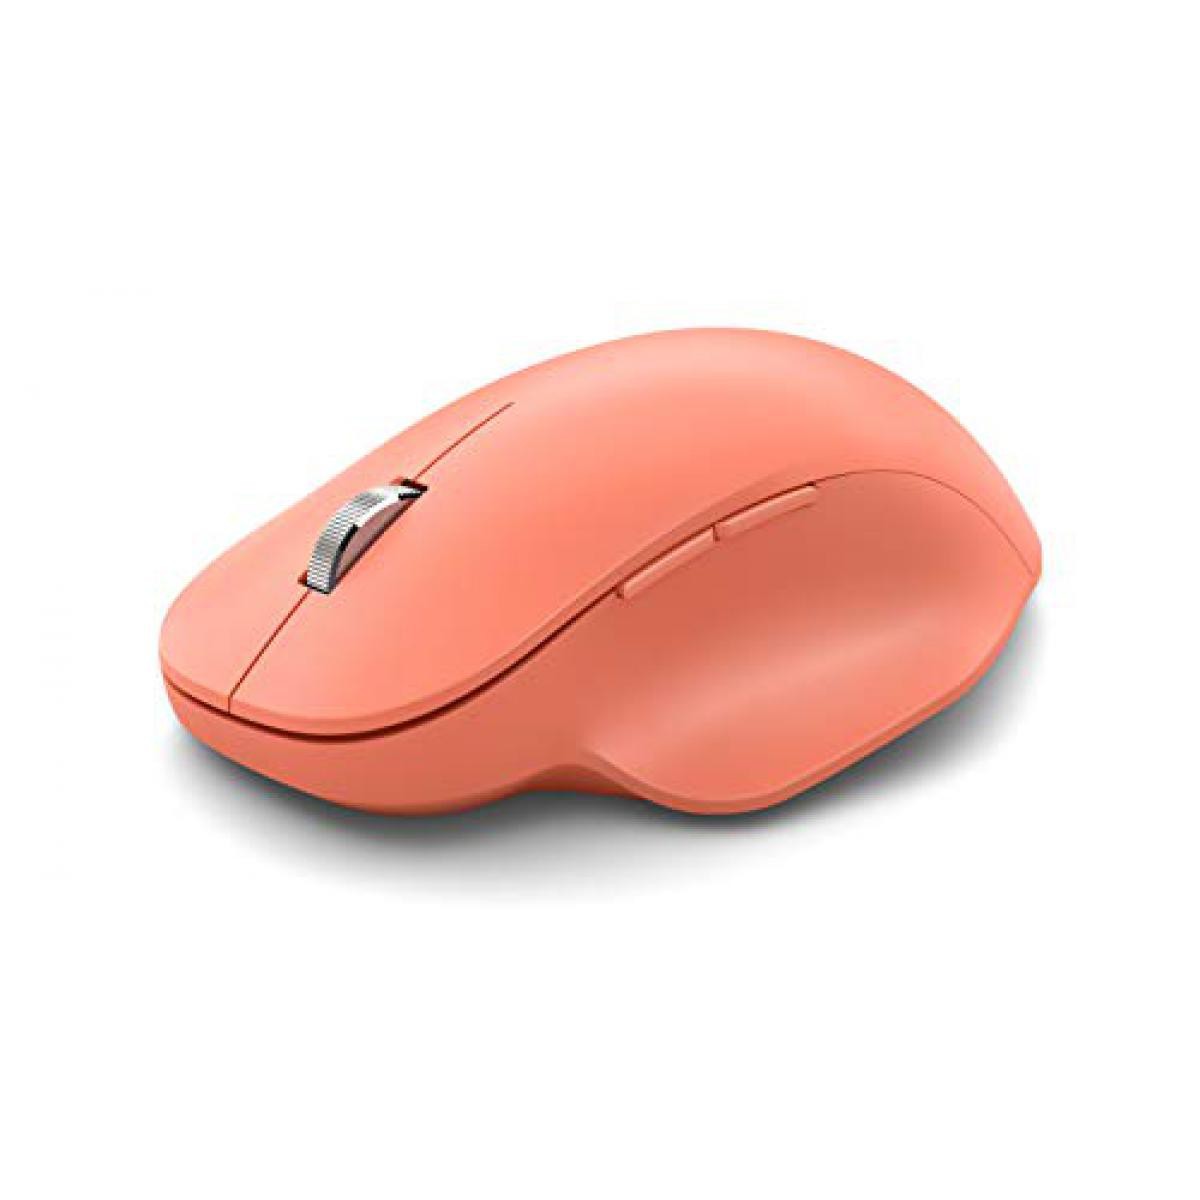 Microsoft - MICROSOFT Ergonomic Mouse - Souris optique - 5 boutons - Sans fil - Bluetooth 5.0 LE - Peche - Souris